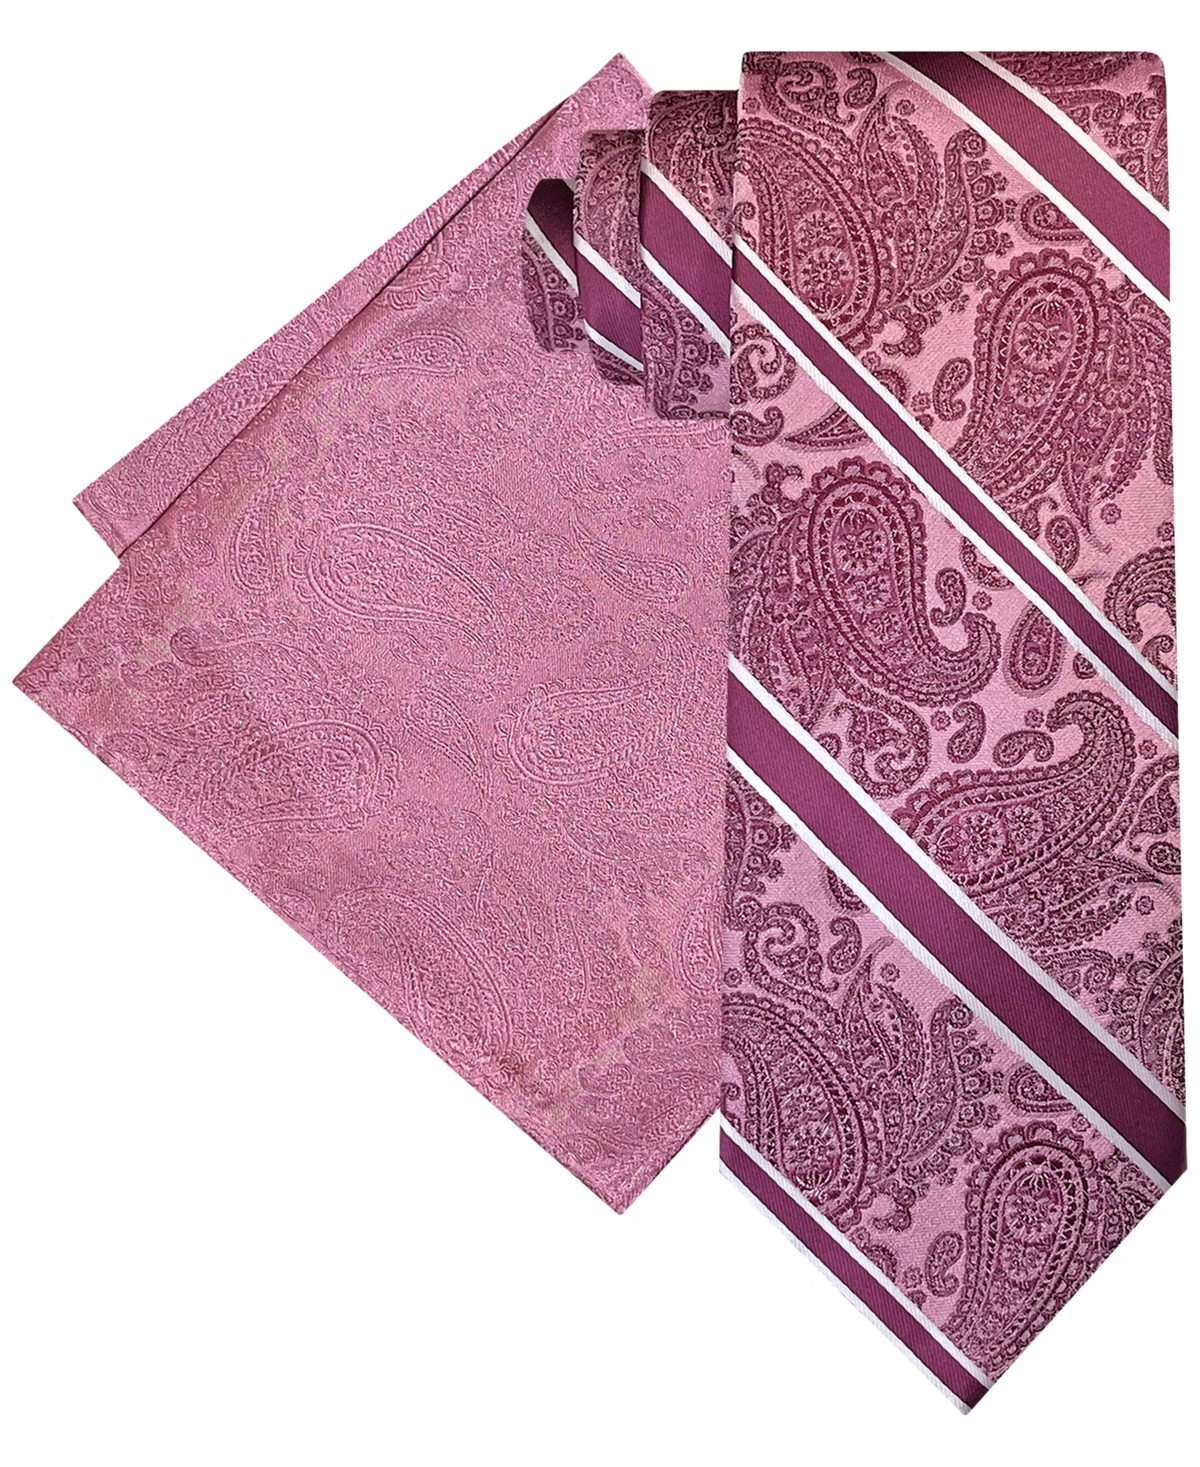 Steve Harvey Men's Stripe Paisley Tie & Pocket Square Set In Rose